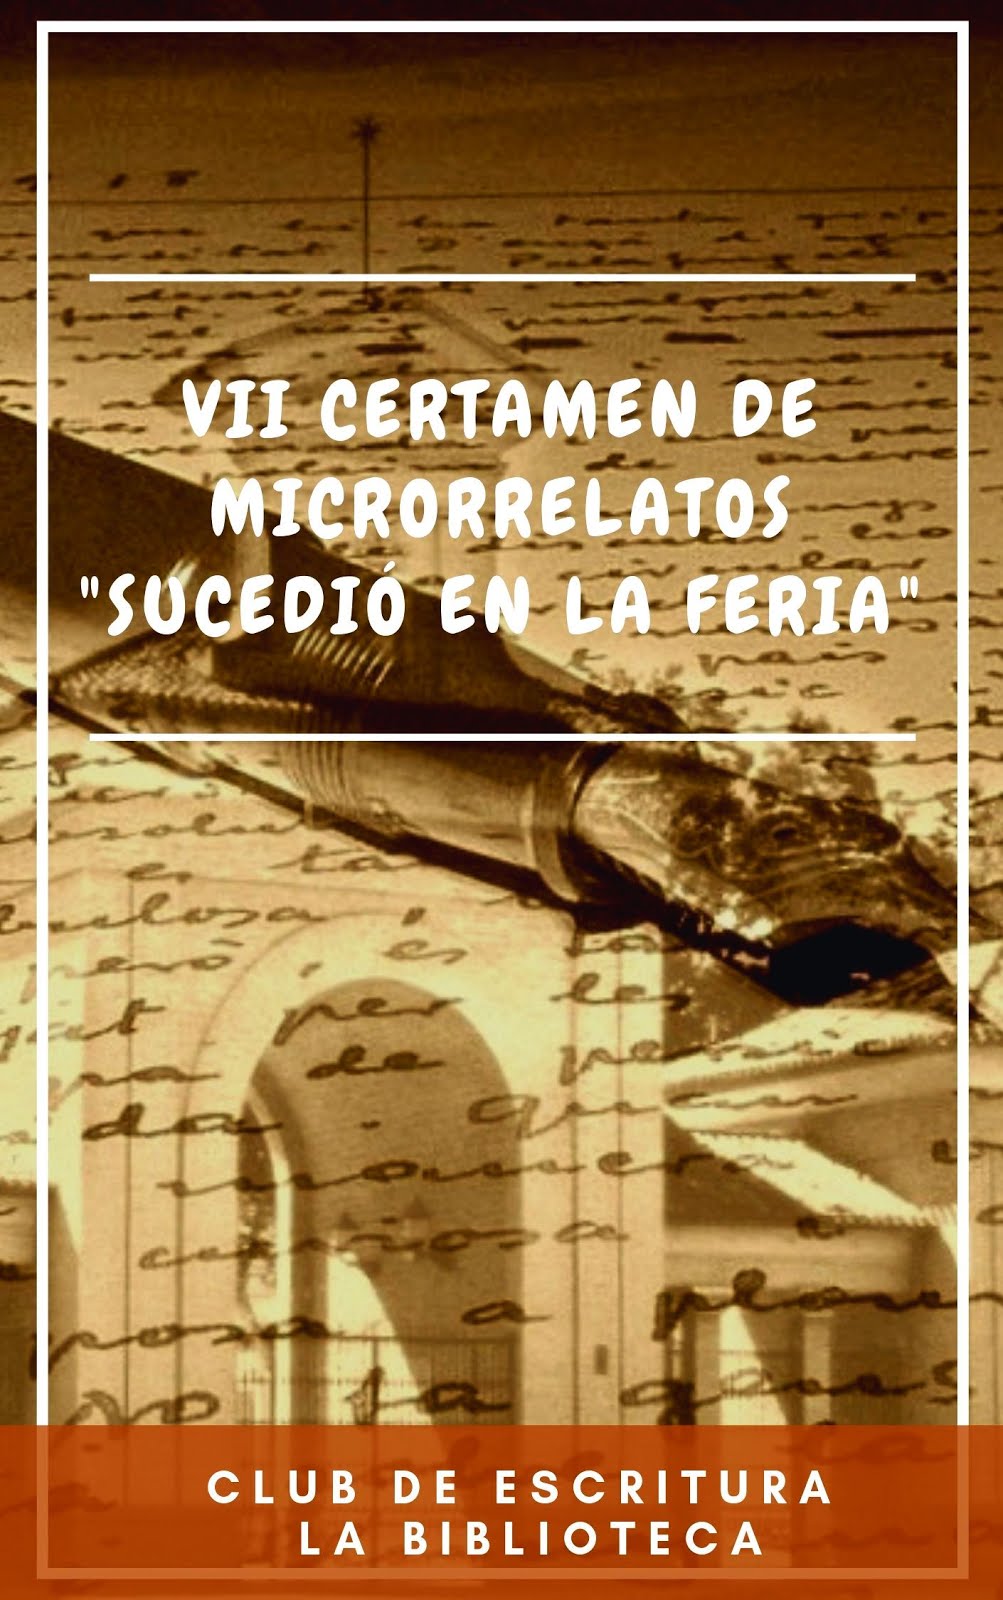 Libro del VII Certamen de Microrrelatos "Sucedió en la Feria"